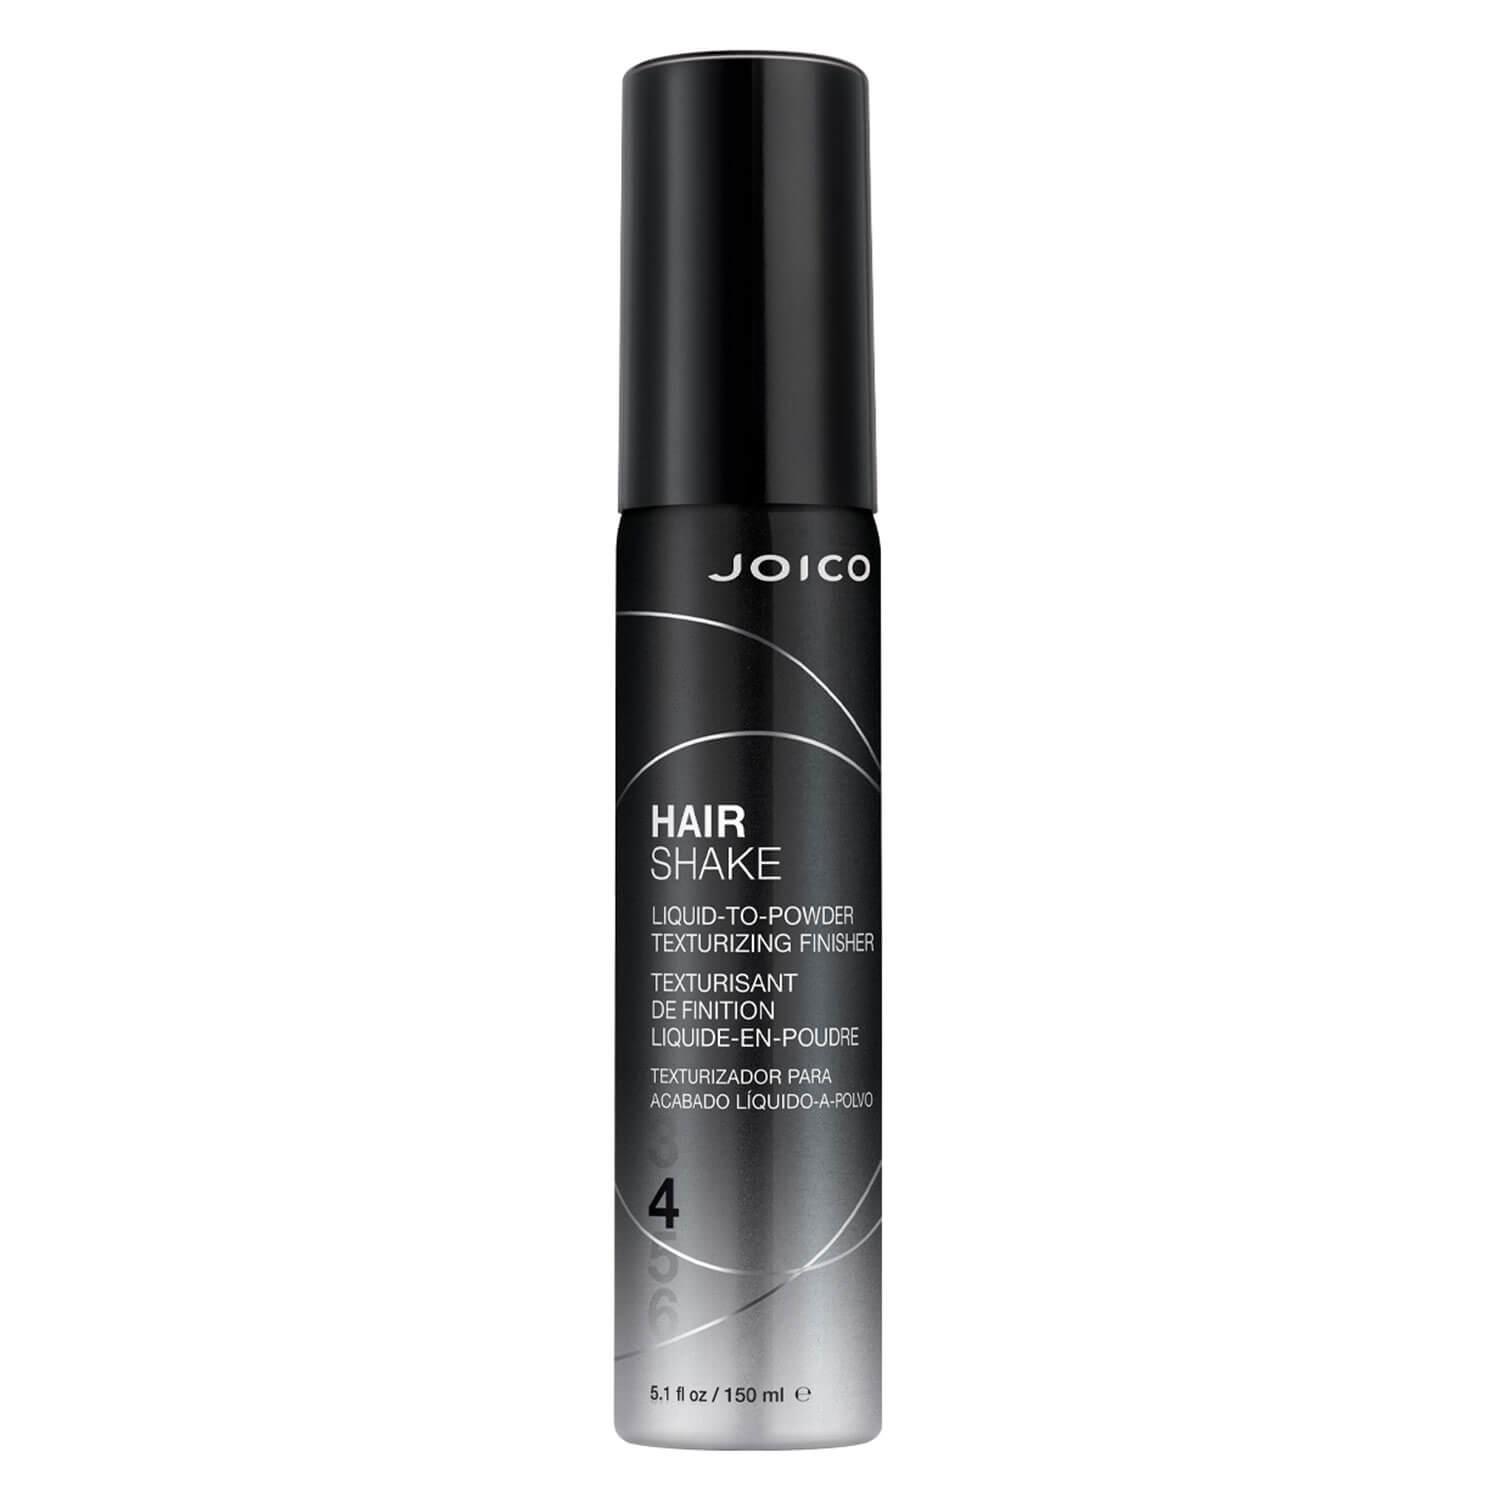 Joico Style & Finish - Hair Shake Liquid-To-Powder Texturizing Finisher